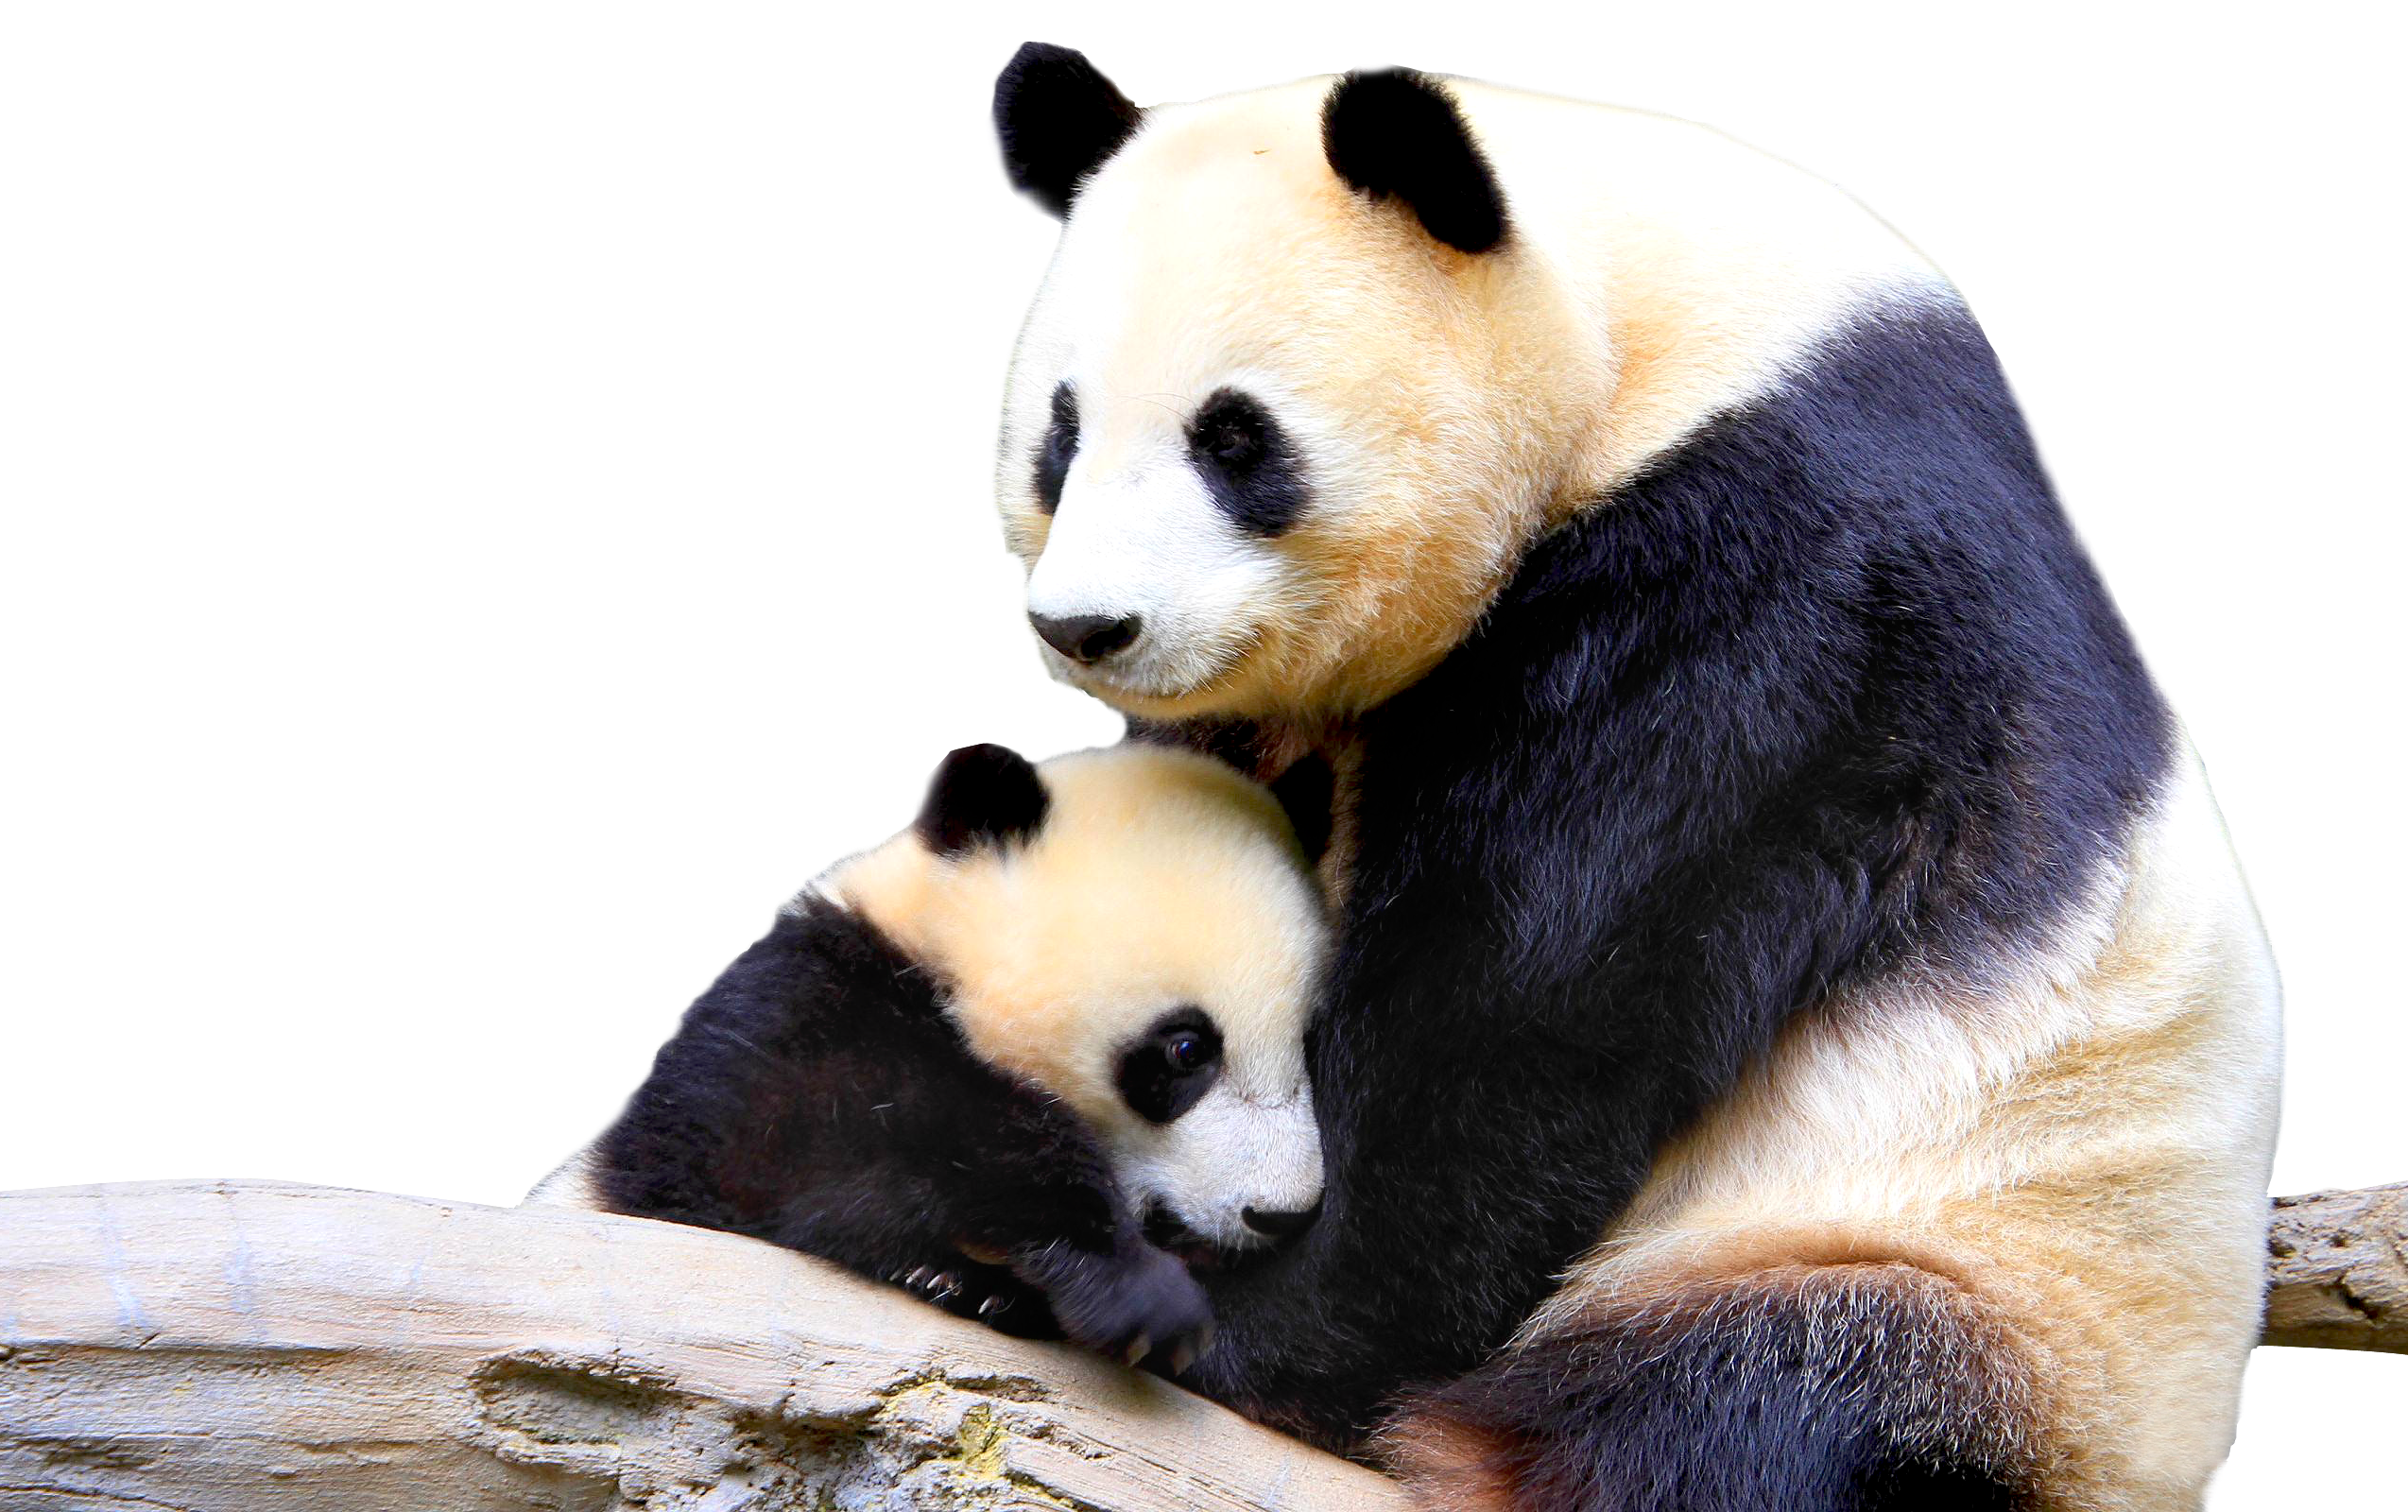 Panda PNG Image